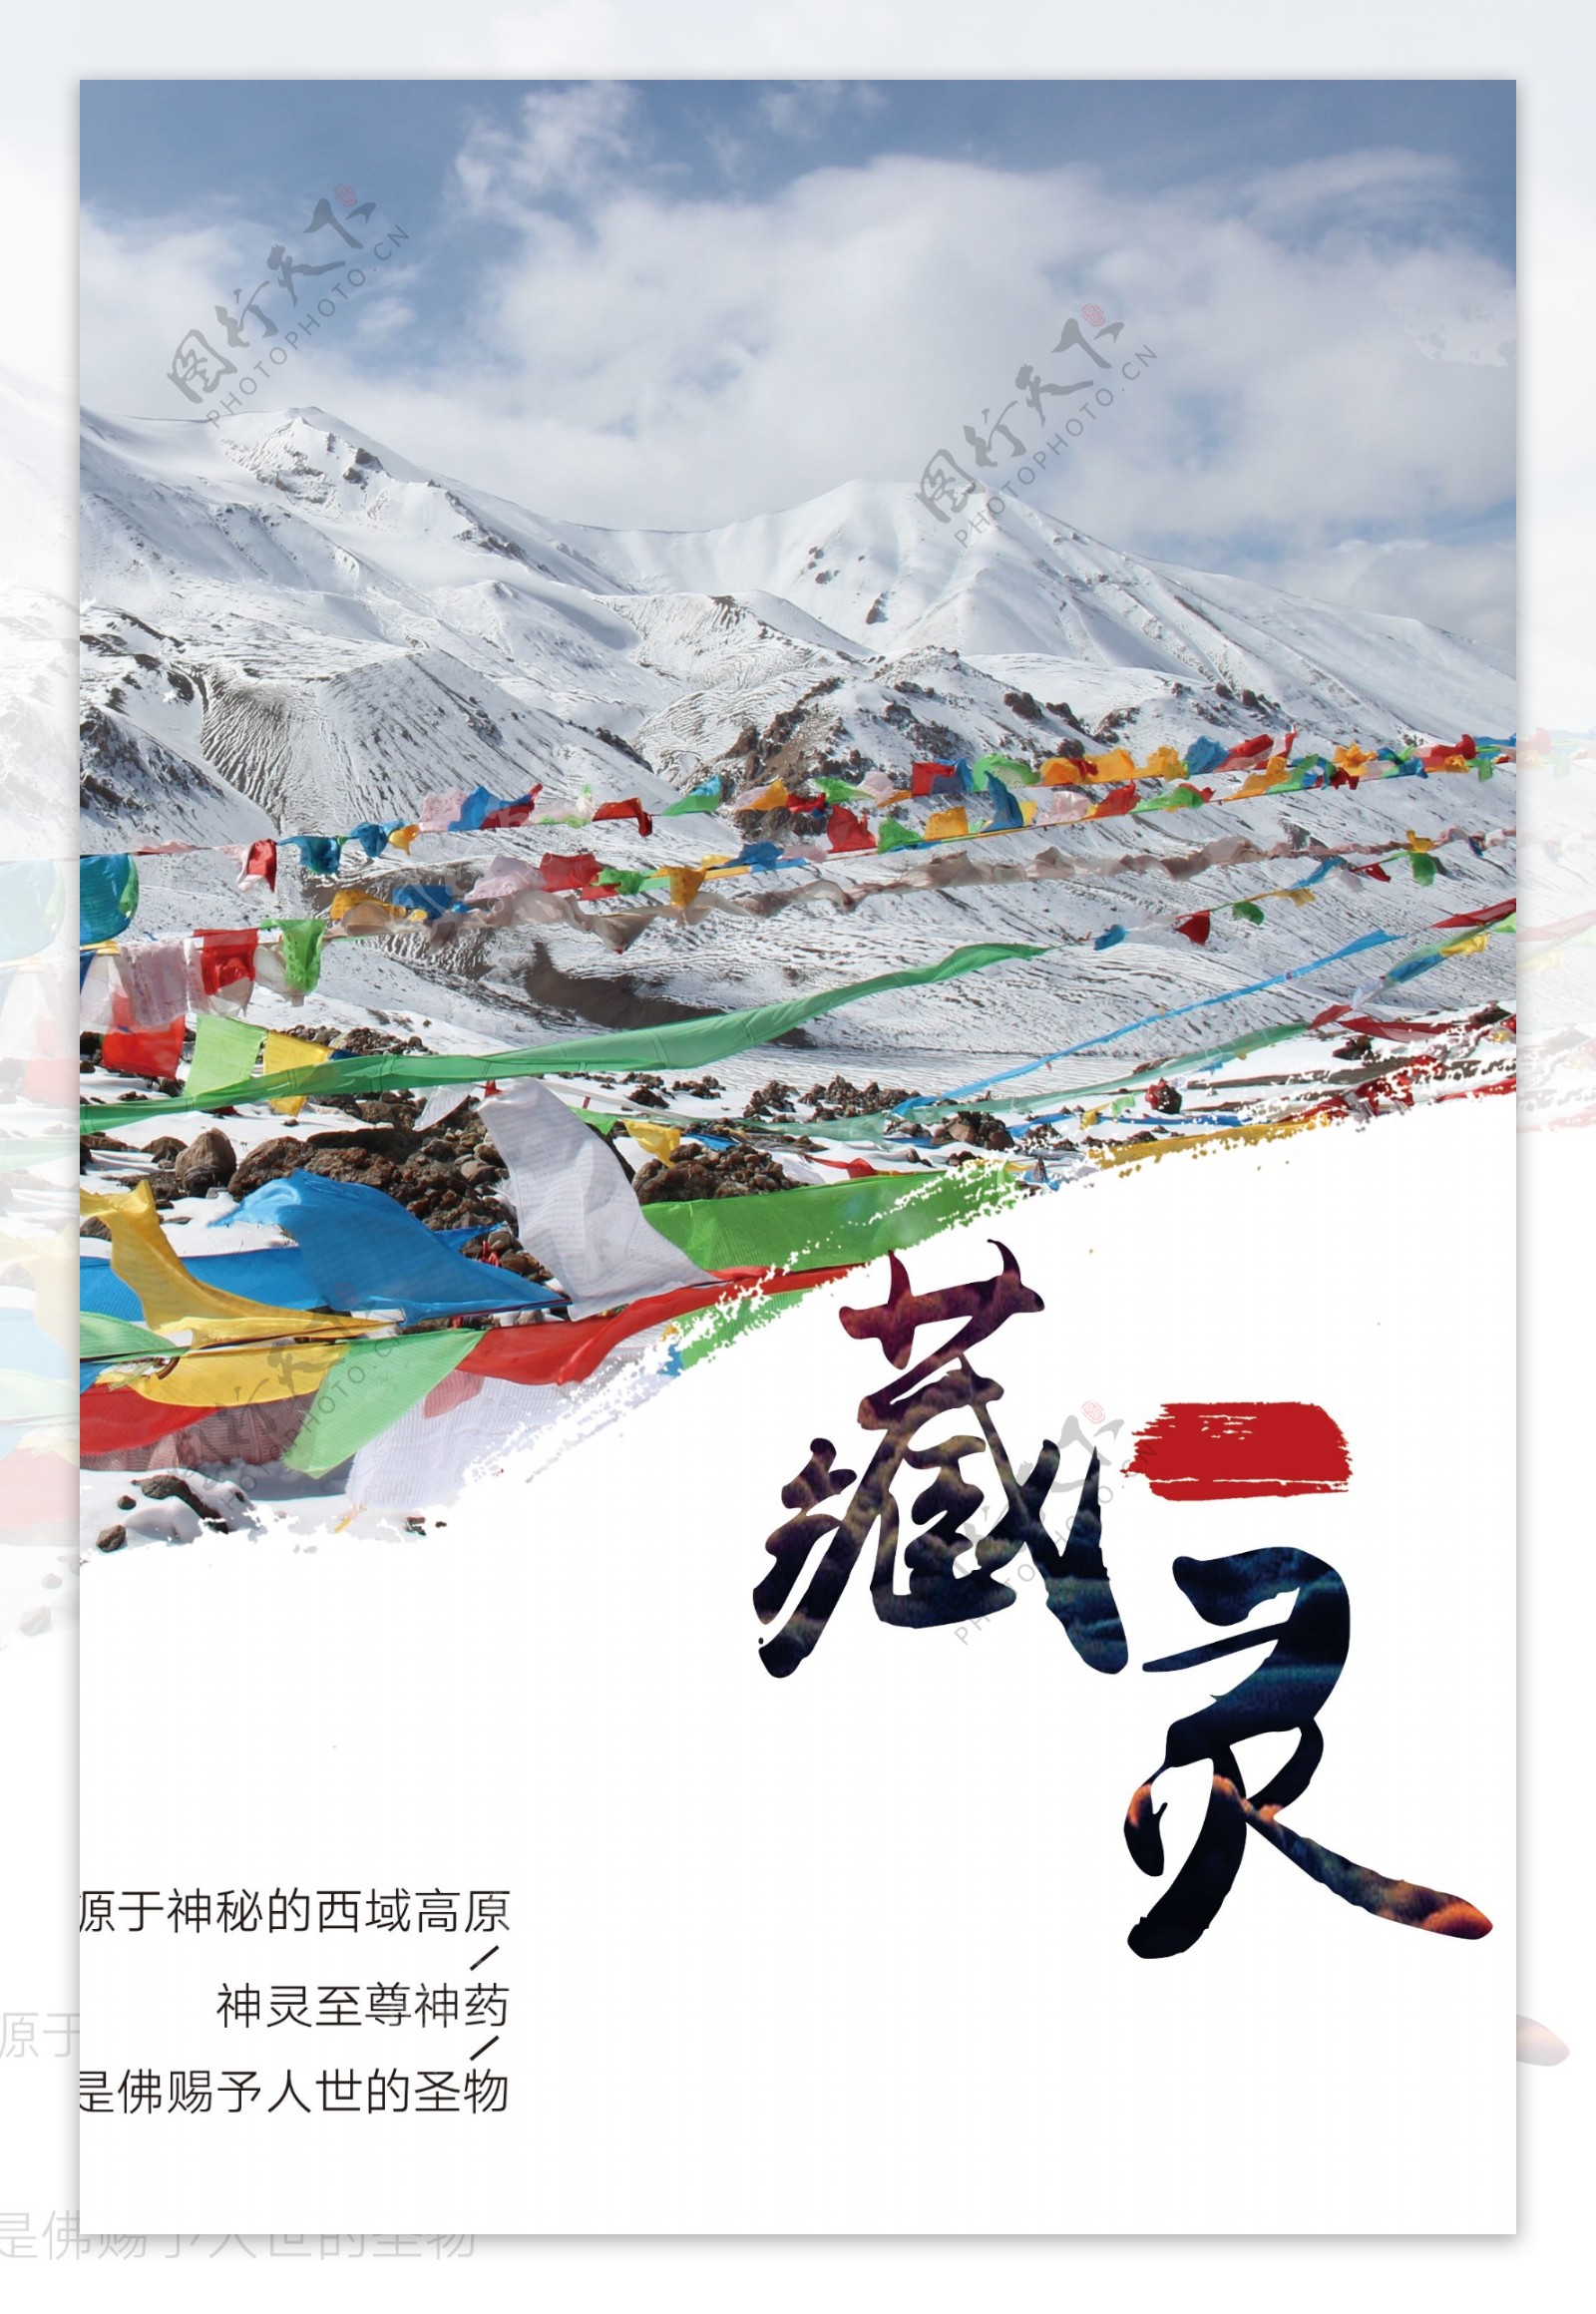 藏族藏医养生布达拉宫